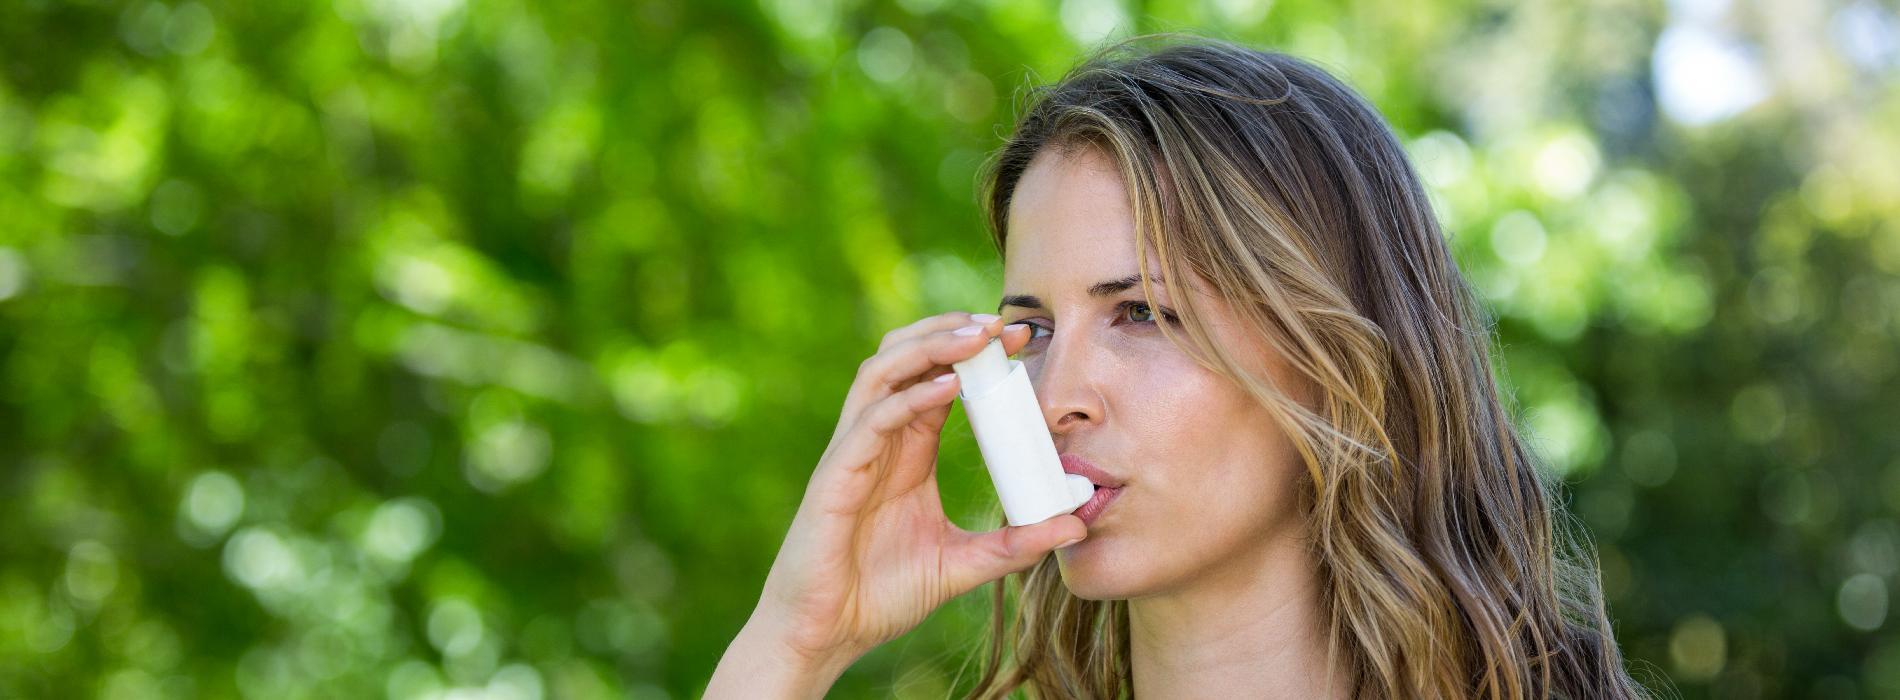 Astma - jak wykryć i zapobiegać zaostrzeniom?